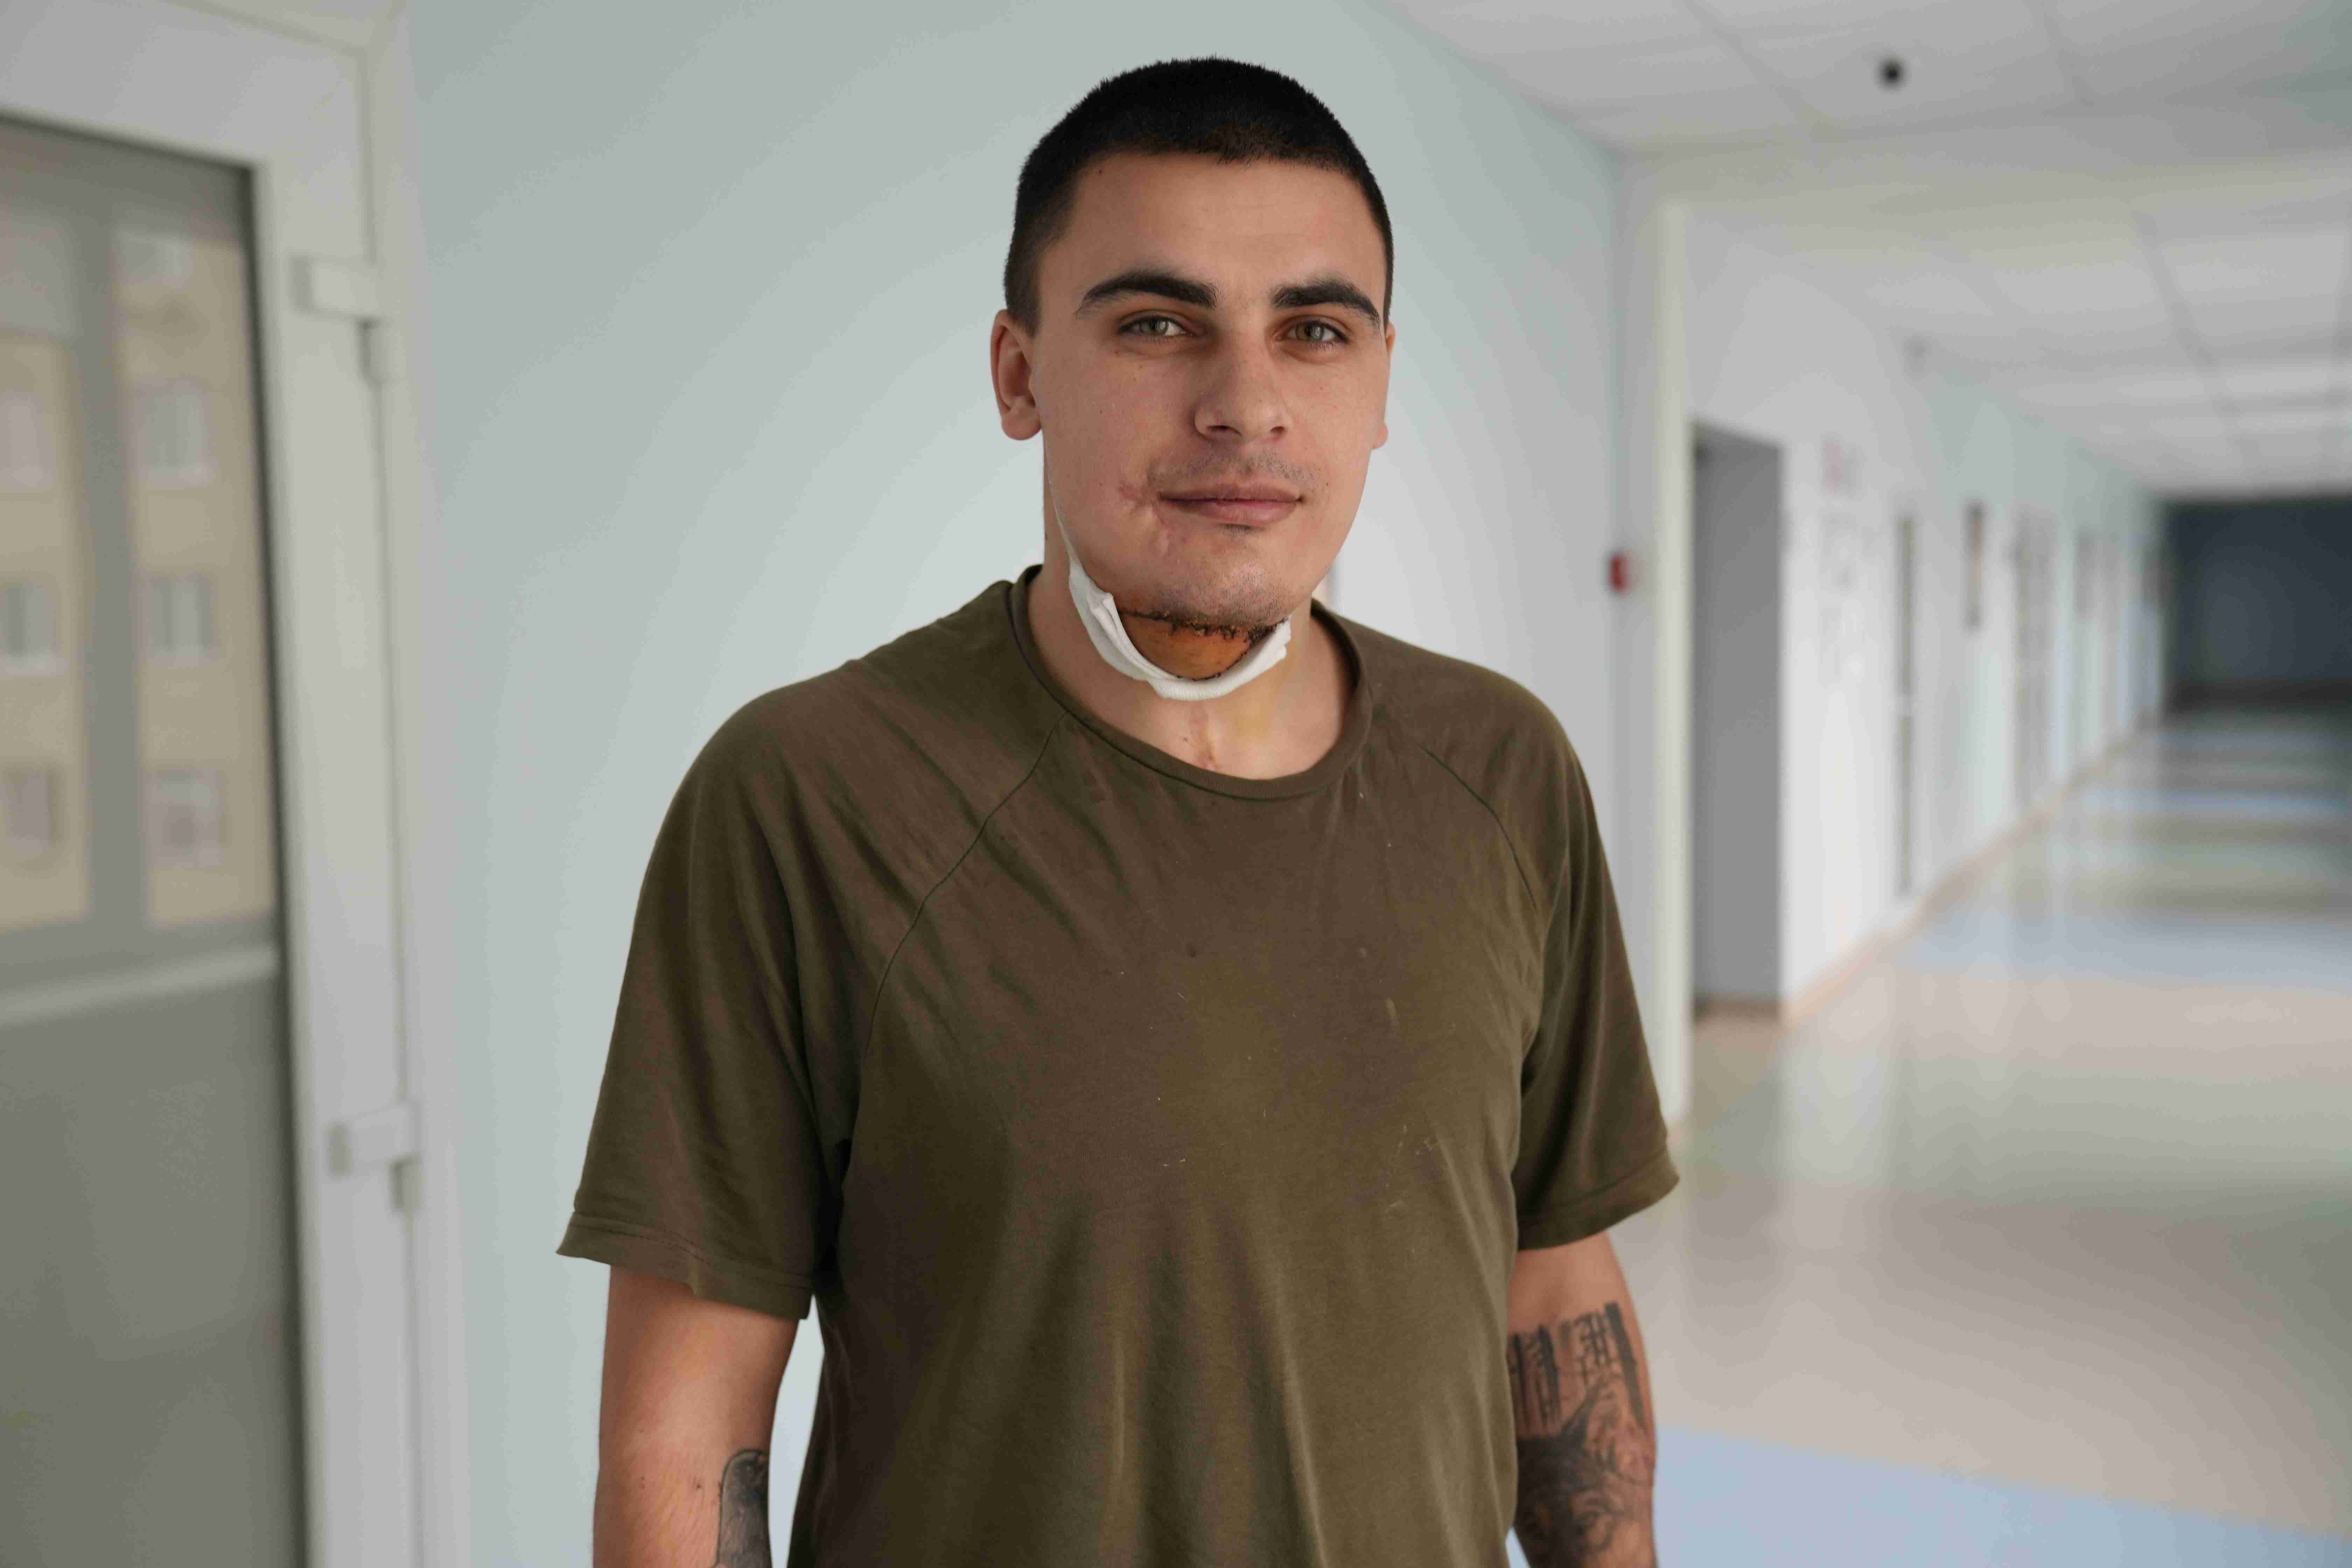 Допомогли пораненому воїну: львівські лікарі вперше самостійно виконали складну мікрохірургічну операцію з реконструкції щелепи (ФОТО)